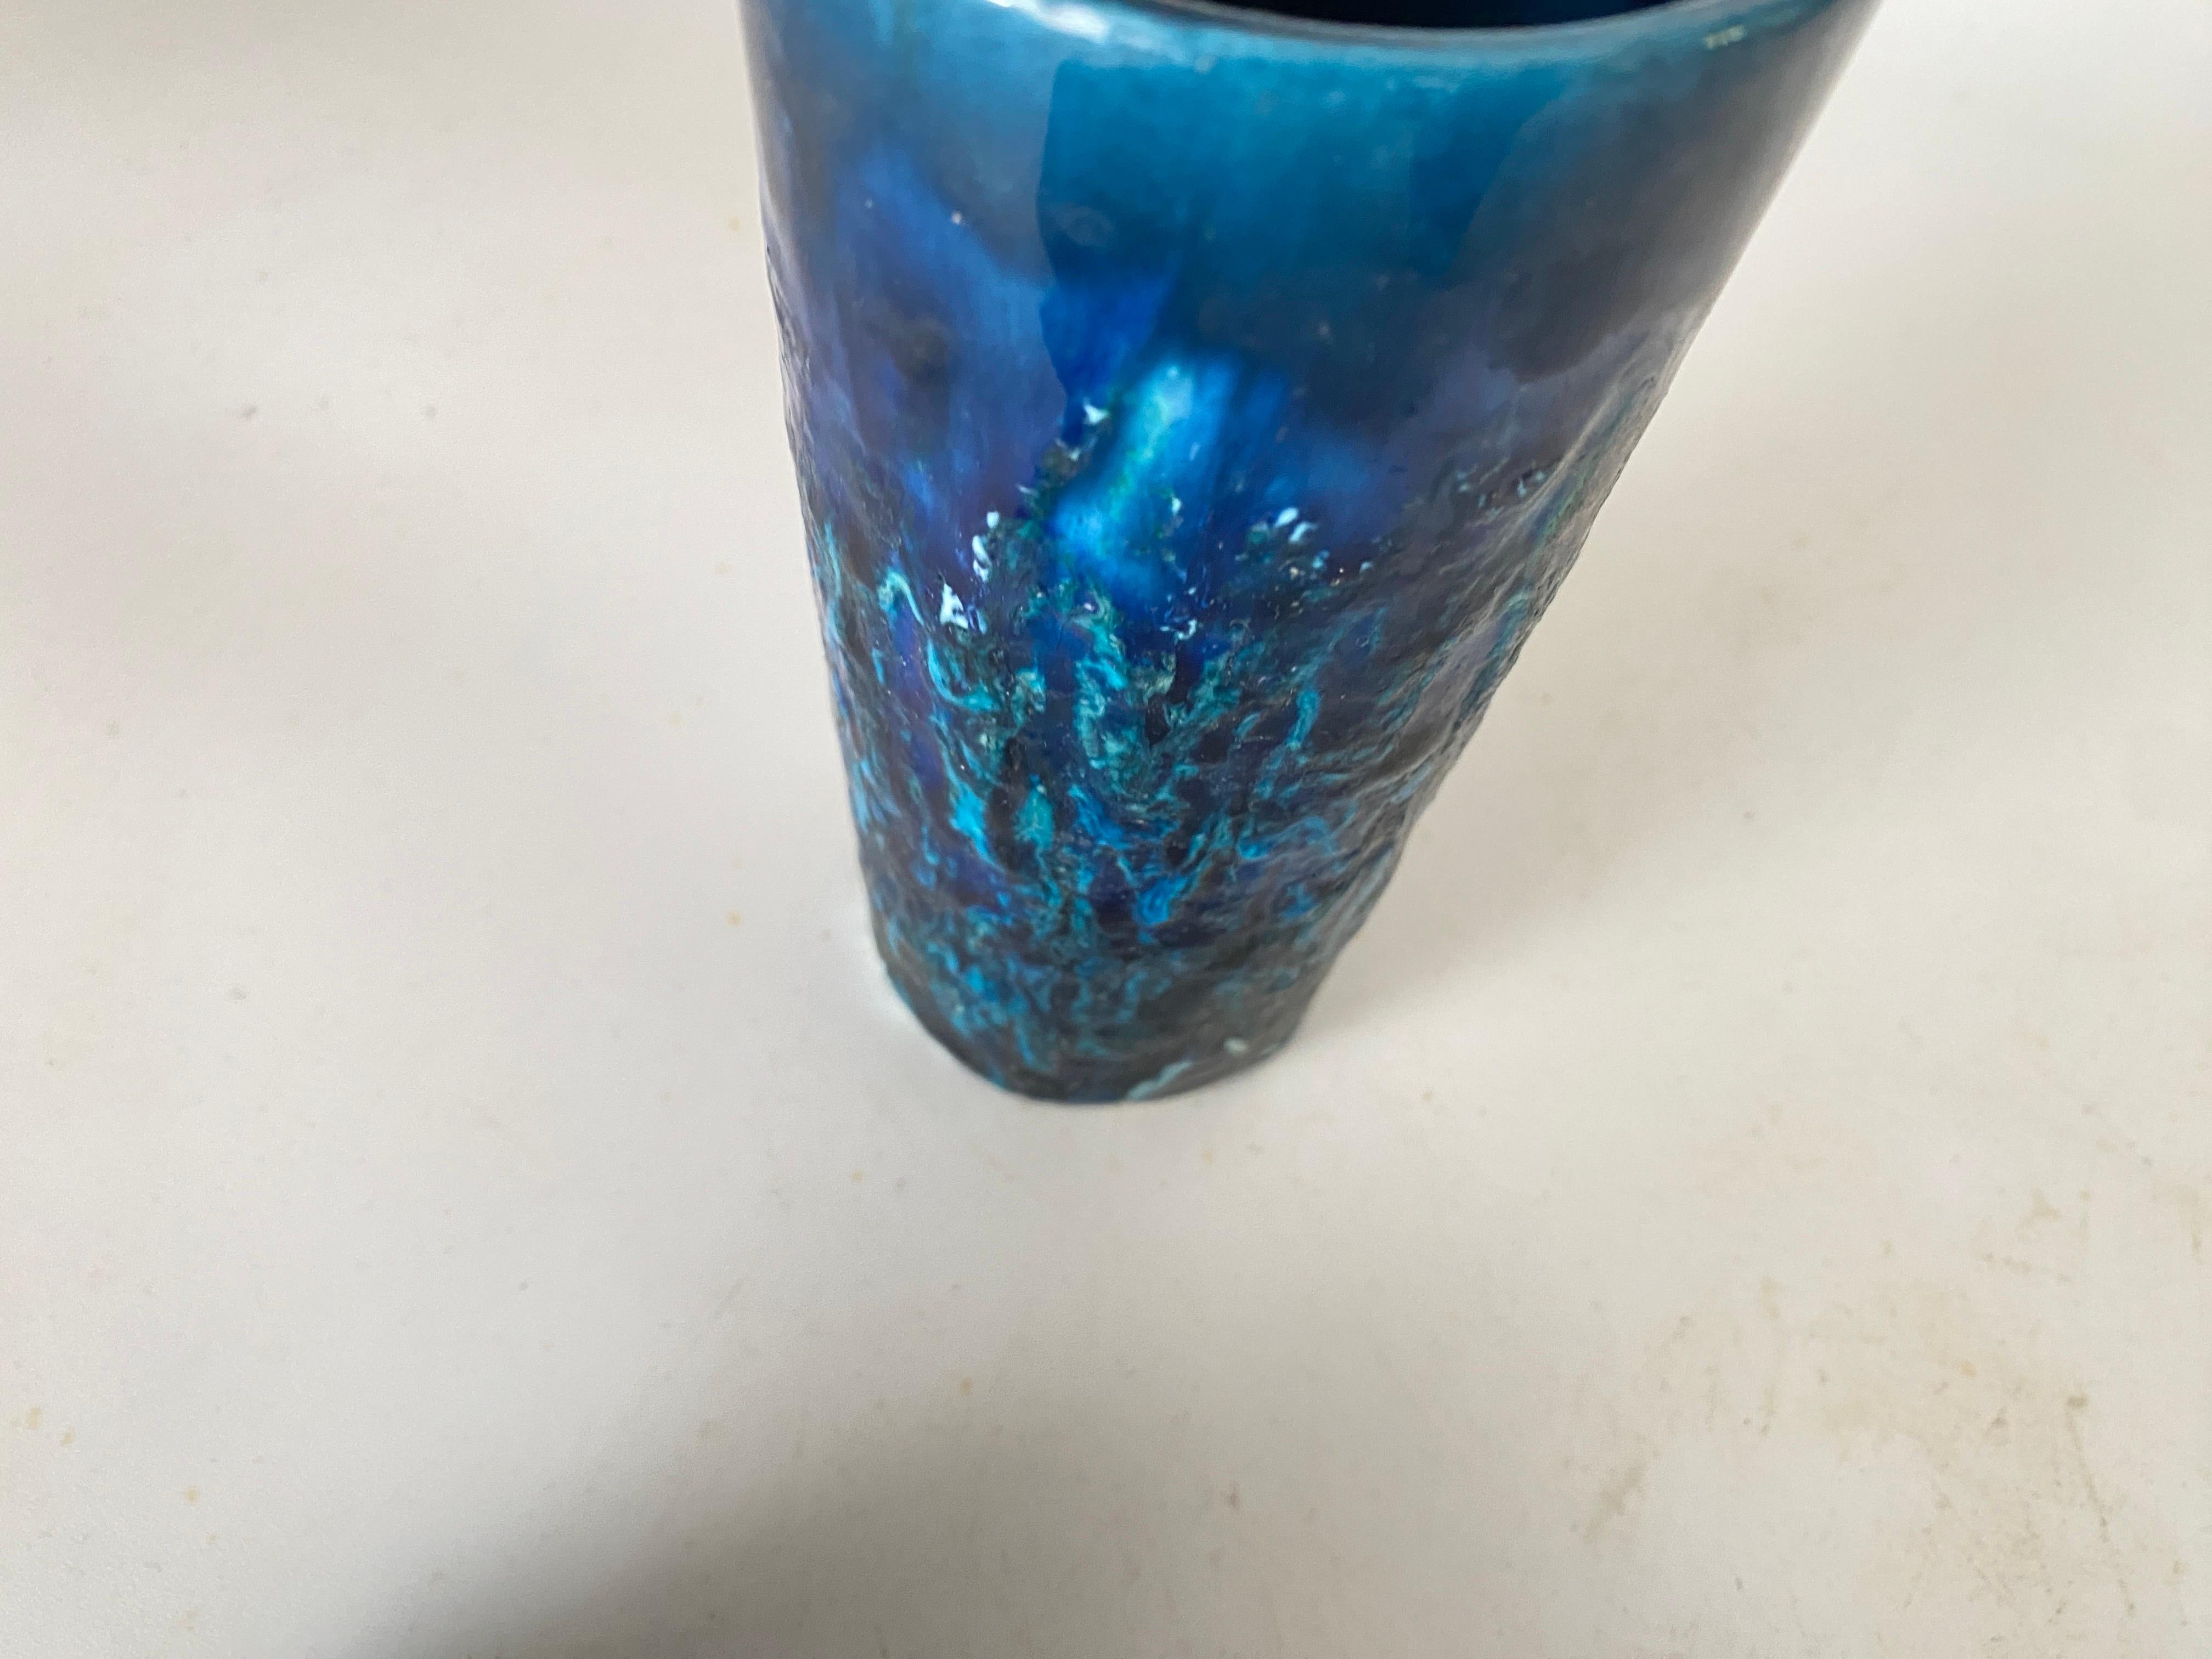 Ensemble de 4 verres en céramique de style Bistosi, style Aldo Londi, 1960. Il a été fabriqué en Italie.
Les couleurs sont bleues.
